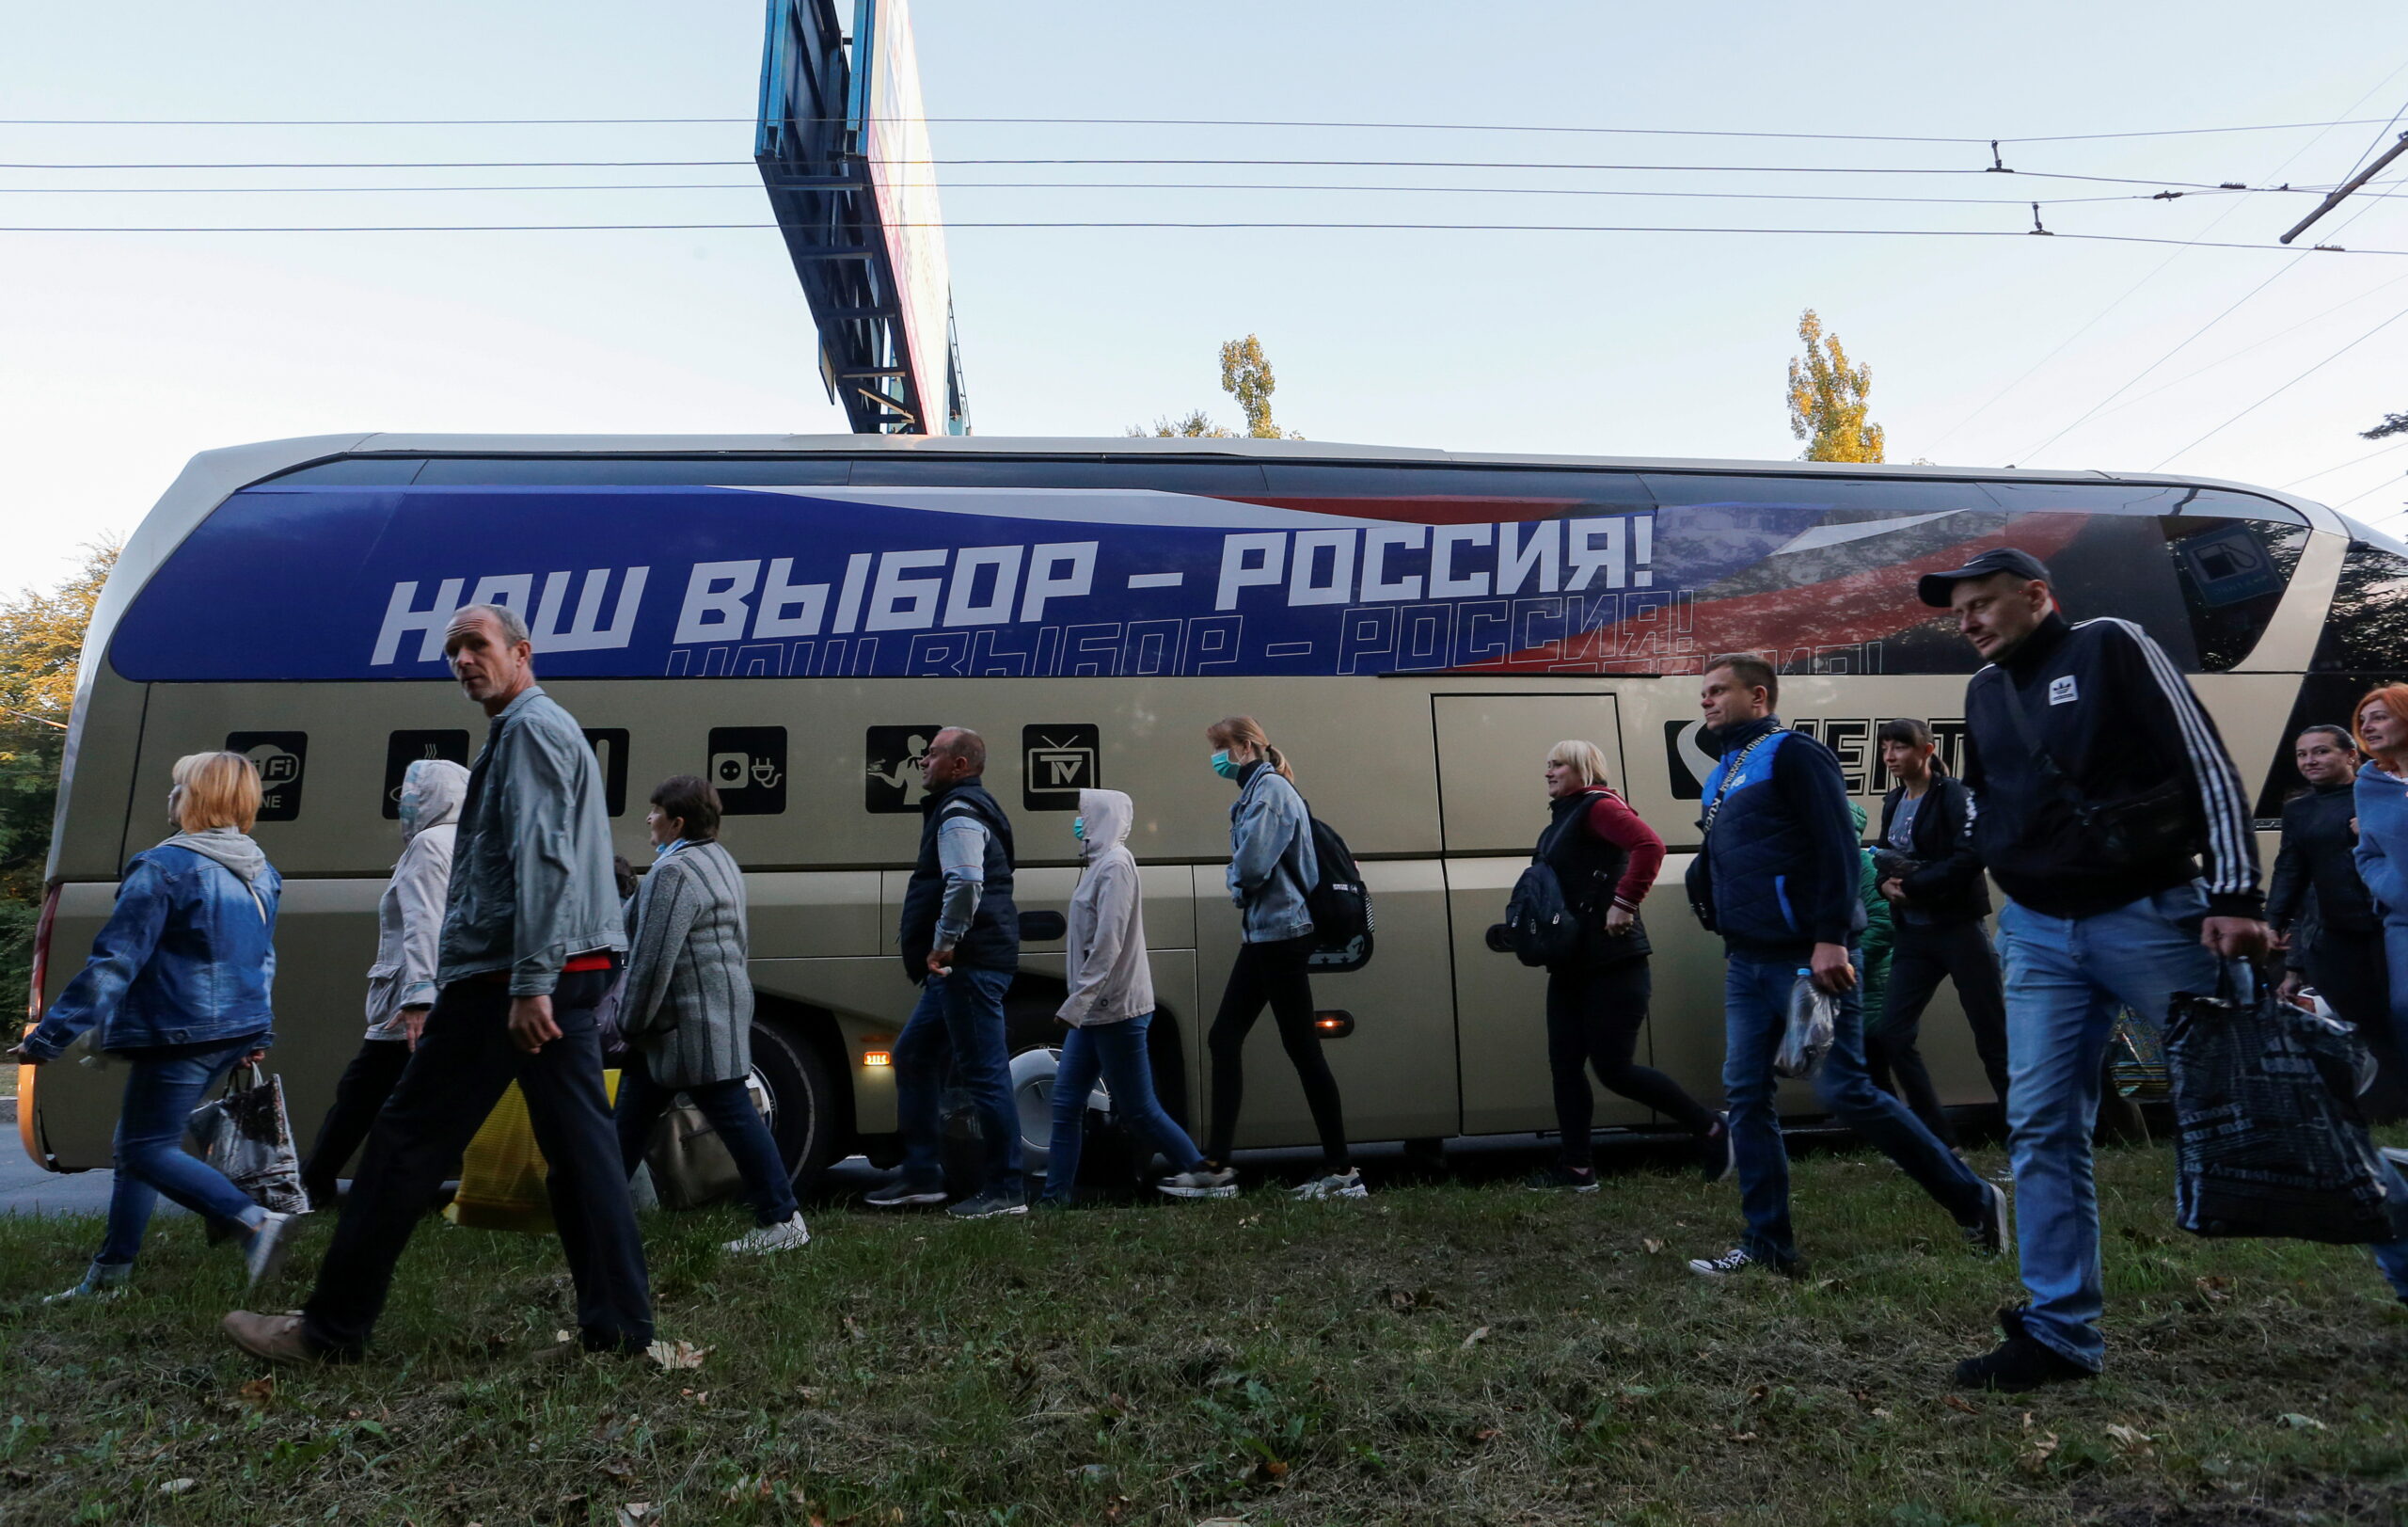 Избиратели из Донецка отправляются в Ростовскую область на голосование. Фото ALEXANDER ERMOCHENKO / TASS / Scanpix / Leta